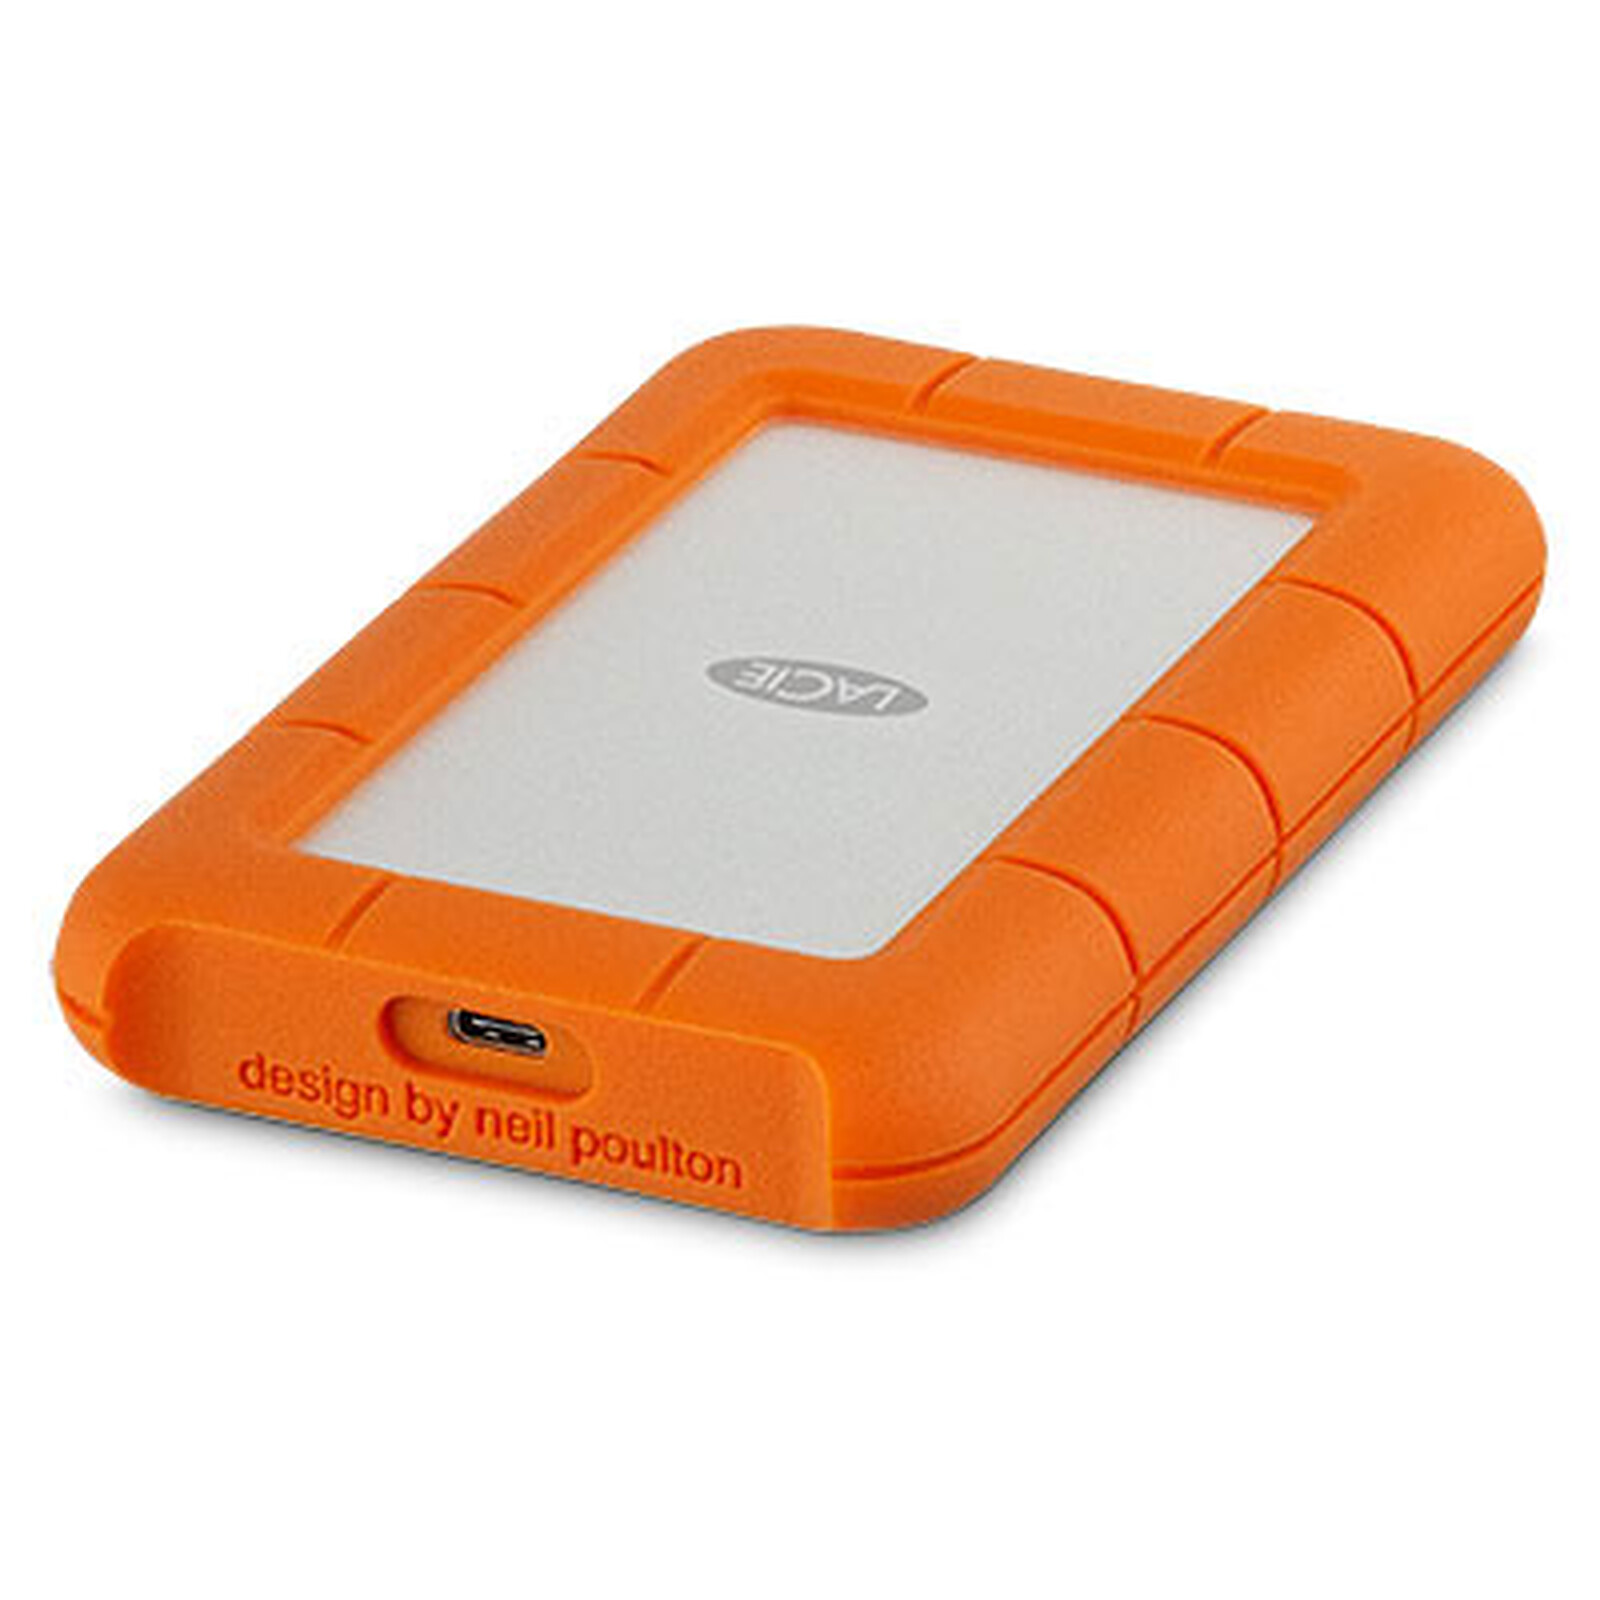 Disque dur ssd externe portable sandisk extreme pro 2 to noir et orange  SANDISK Pas Cher 